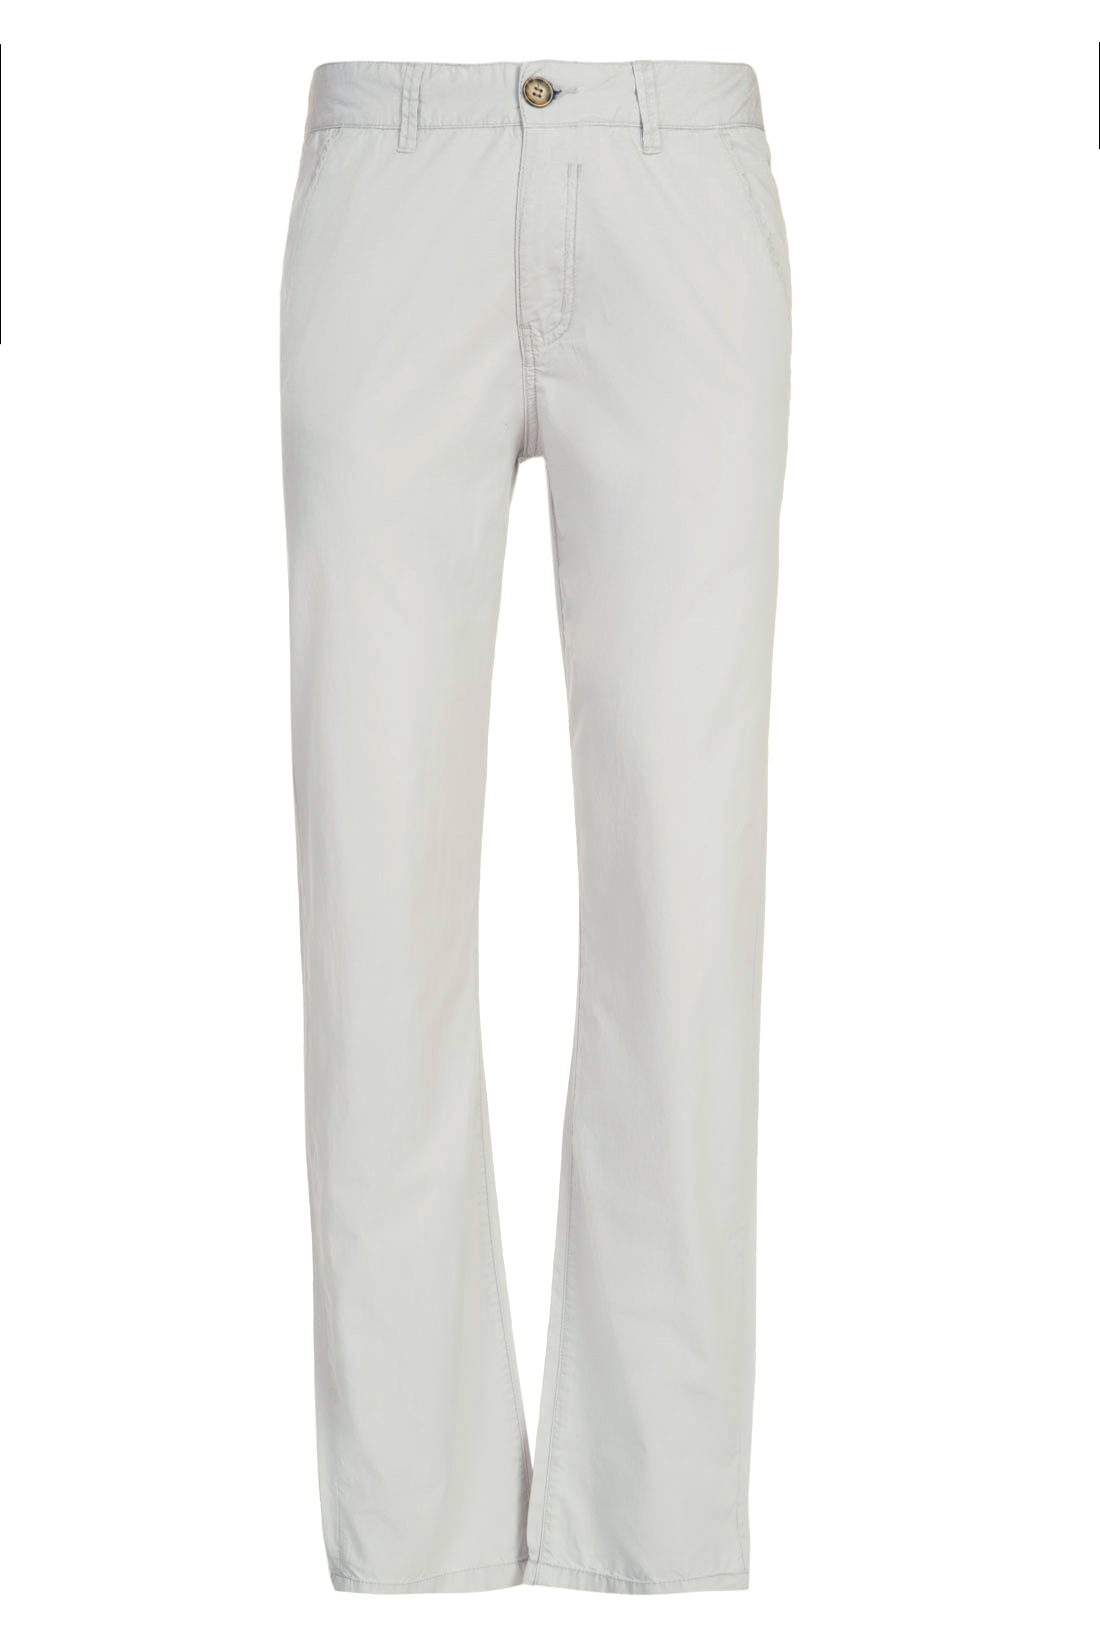 Хлопковые брюки-чиносы (арт. baon B797010), размер 3XL, цвет белый Хлопковые брюки-чиносы (арт. baon B797010) - фото 4